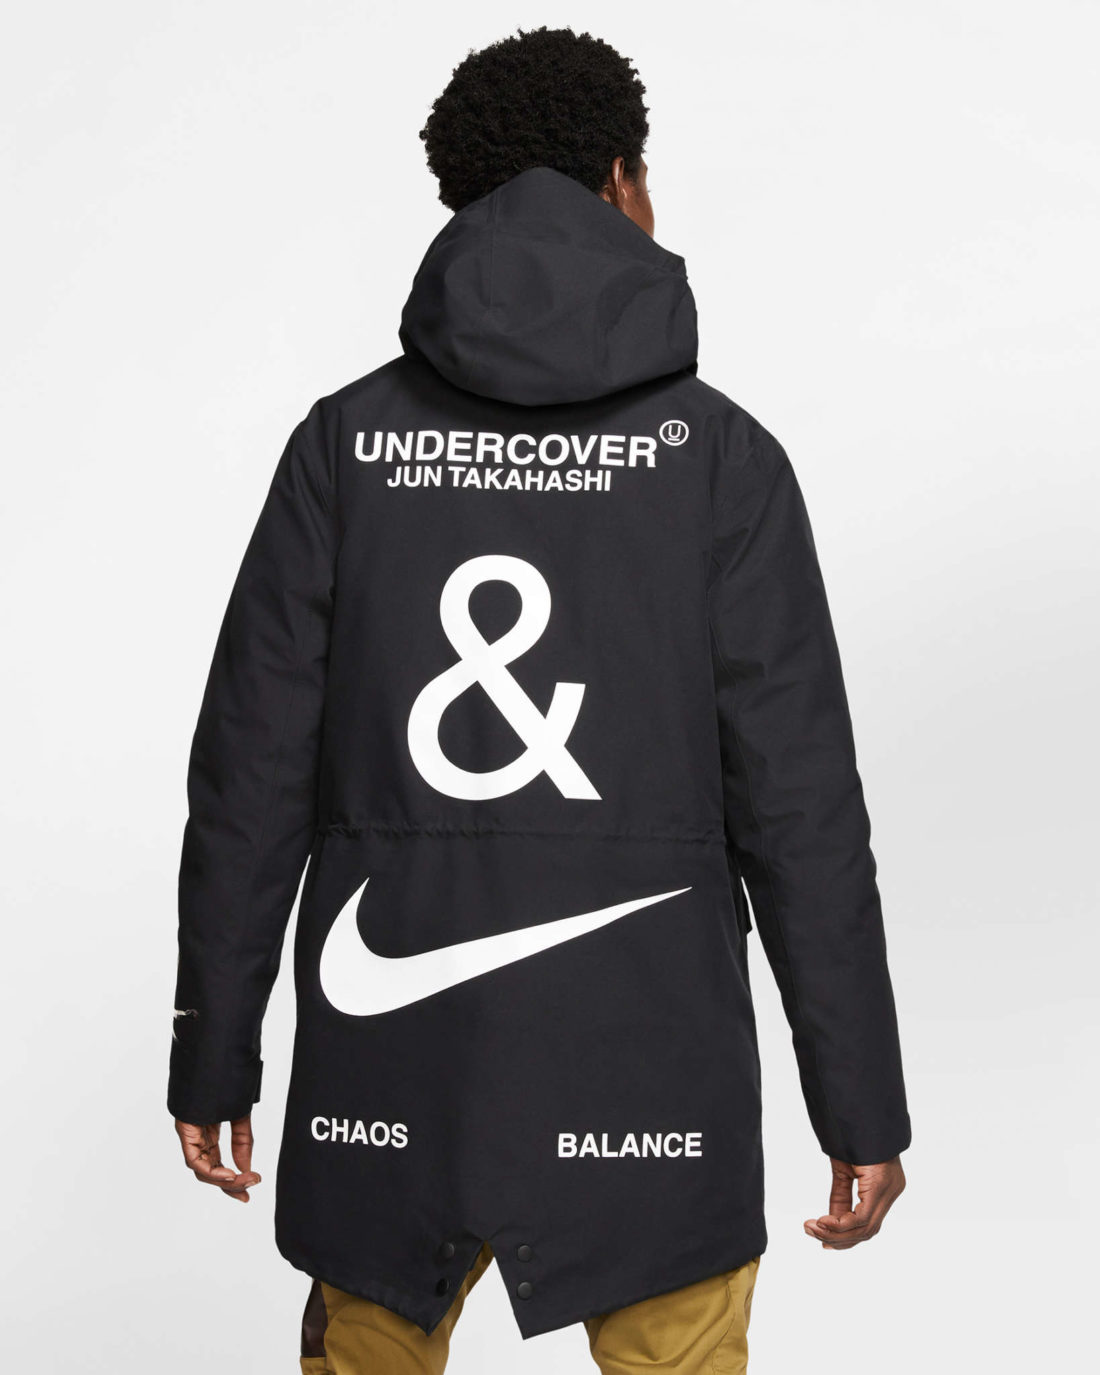 undercover x nike hoodie